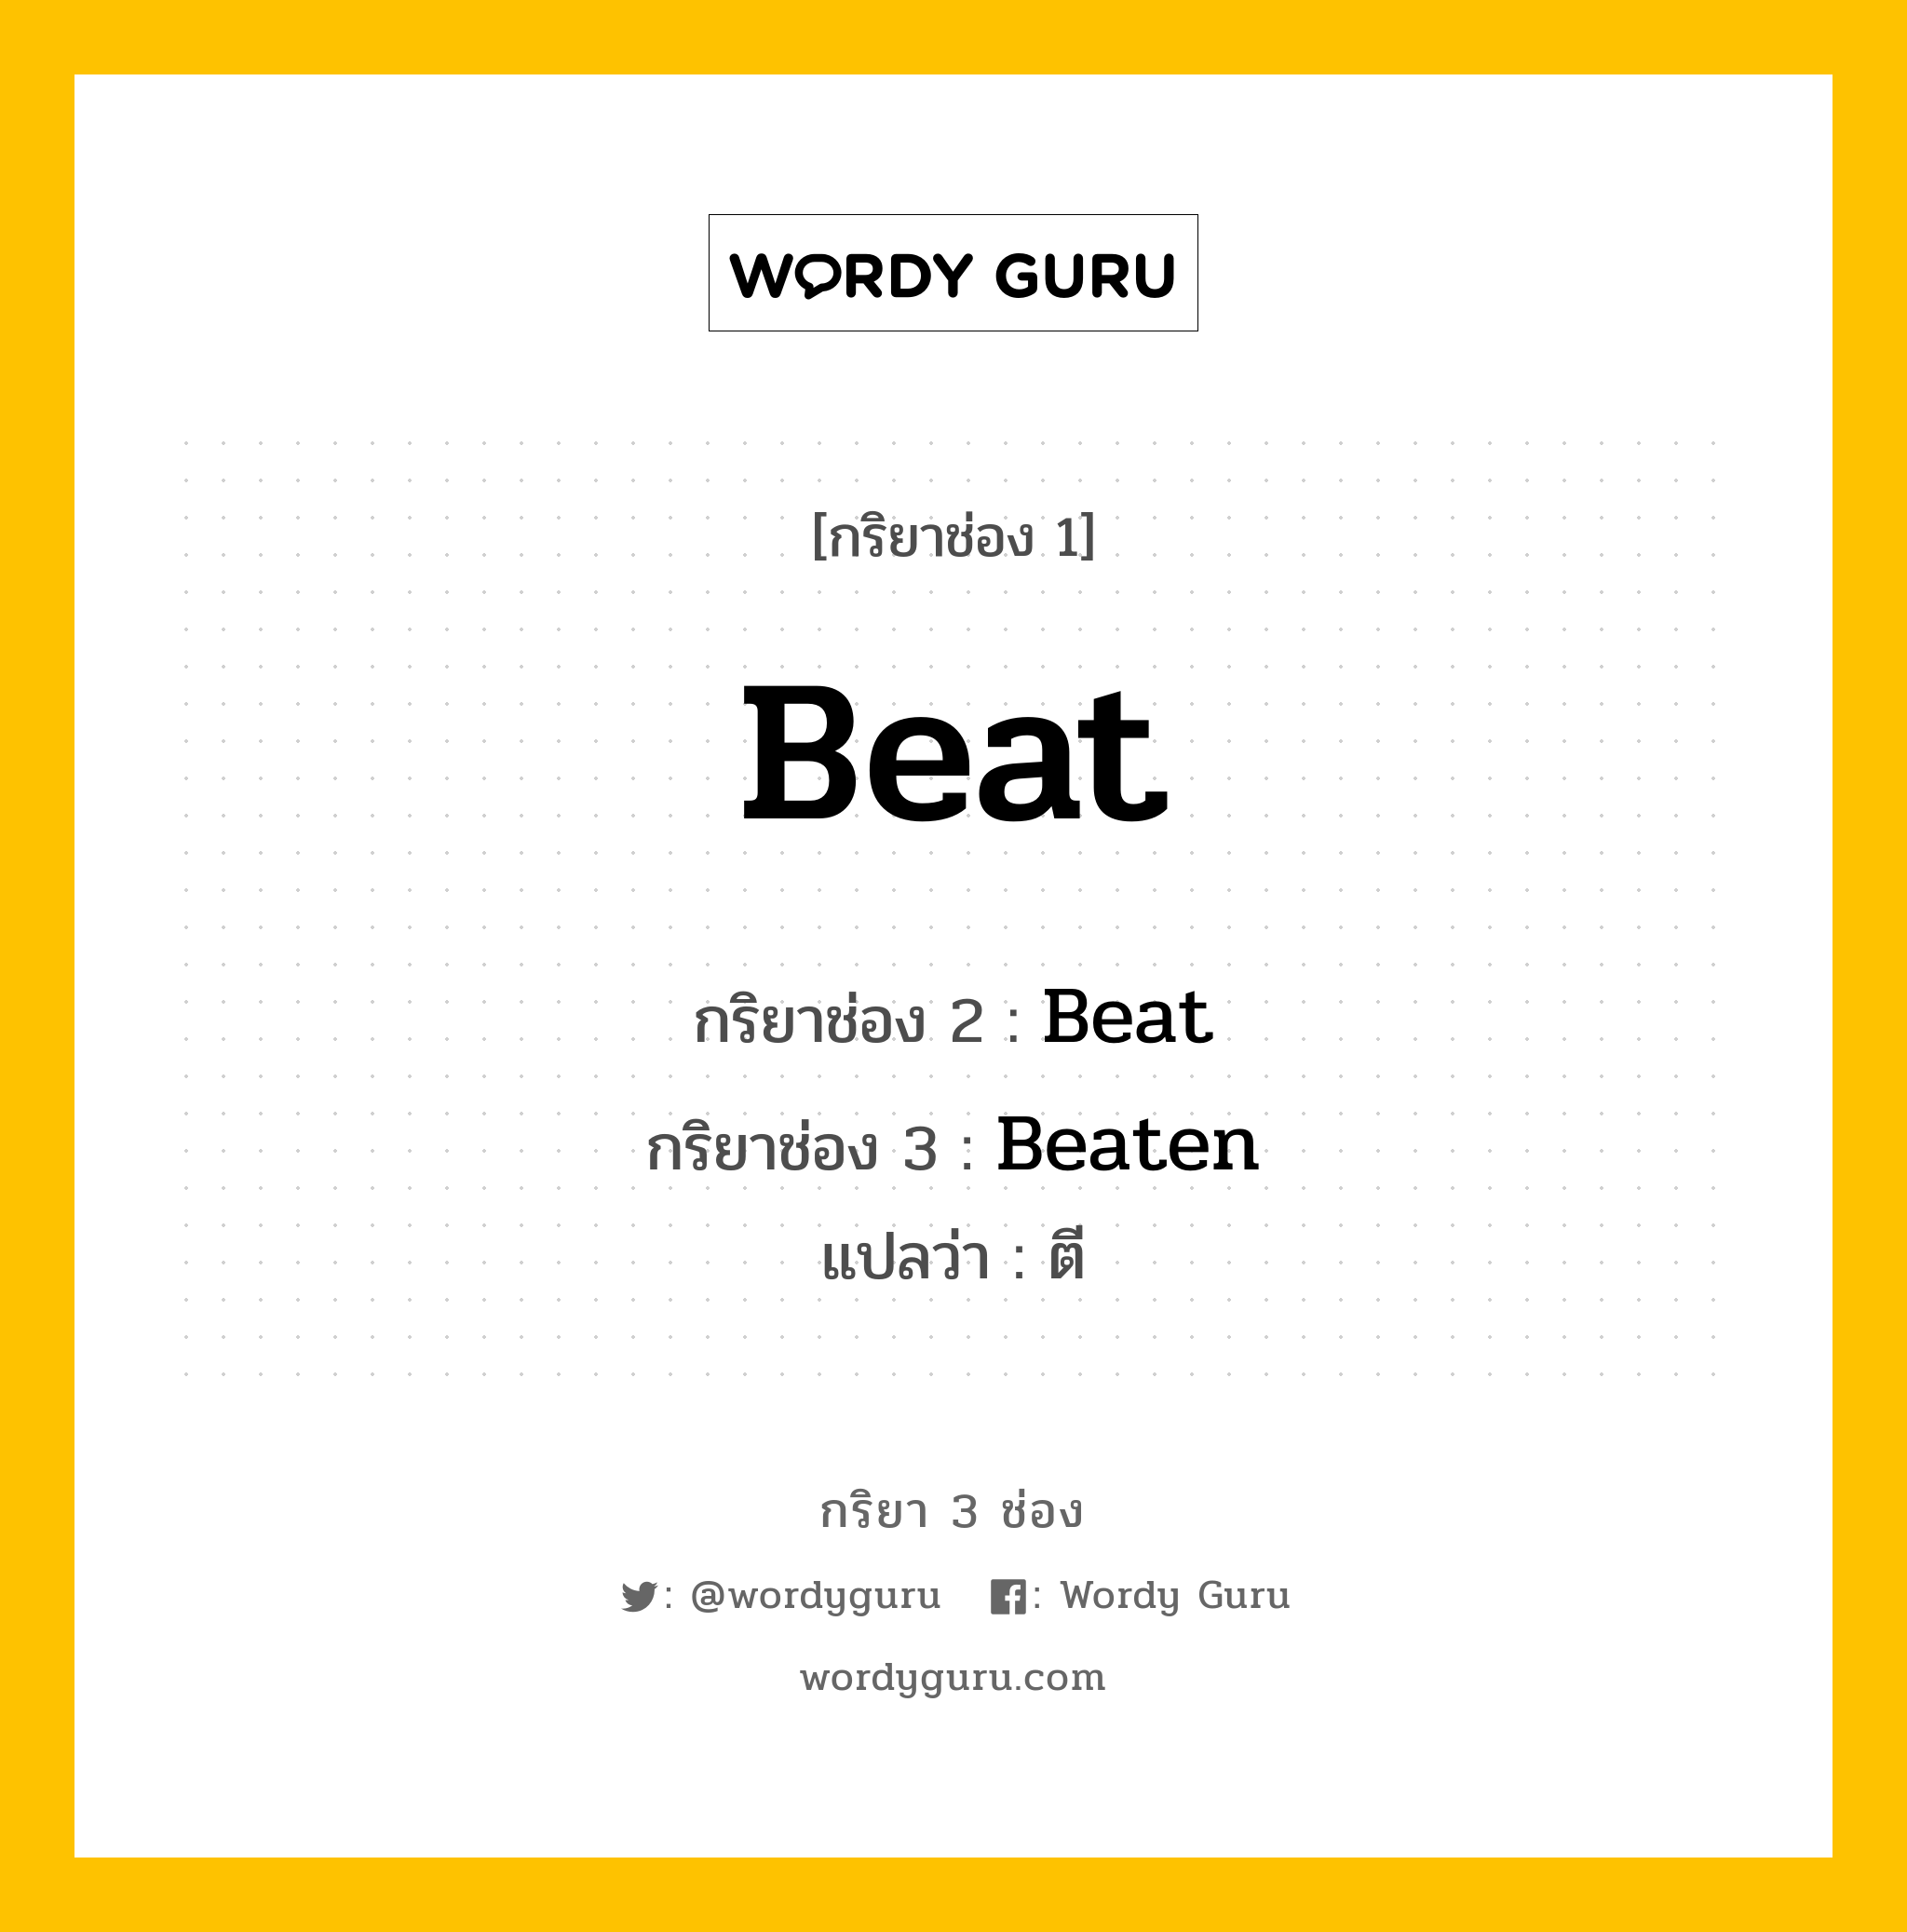 กริยา 3 ช่อง: Beat ช่อง 2 Beat ช่อง 3 คืออะไร, กริยาช่อง 1 Beat กริยาช่อง 2 Beat กริยาช่อง 3 Beaten แปลว่า ตี หมวด Irregular Verb